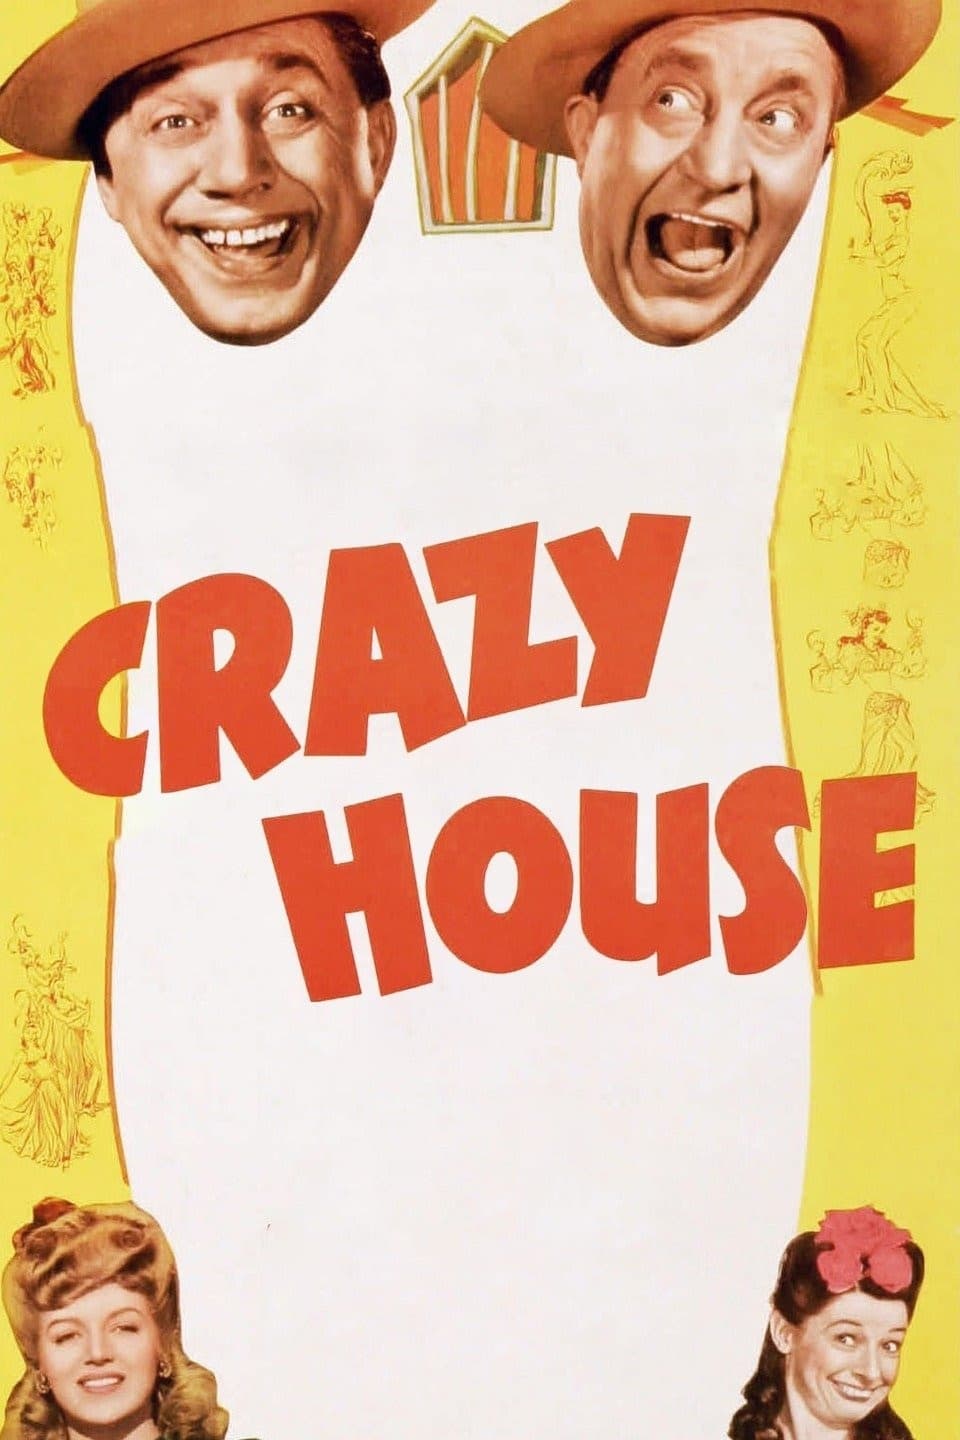 Crazy House (1943)